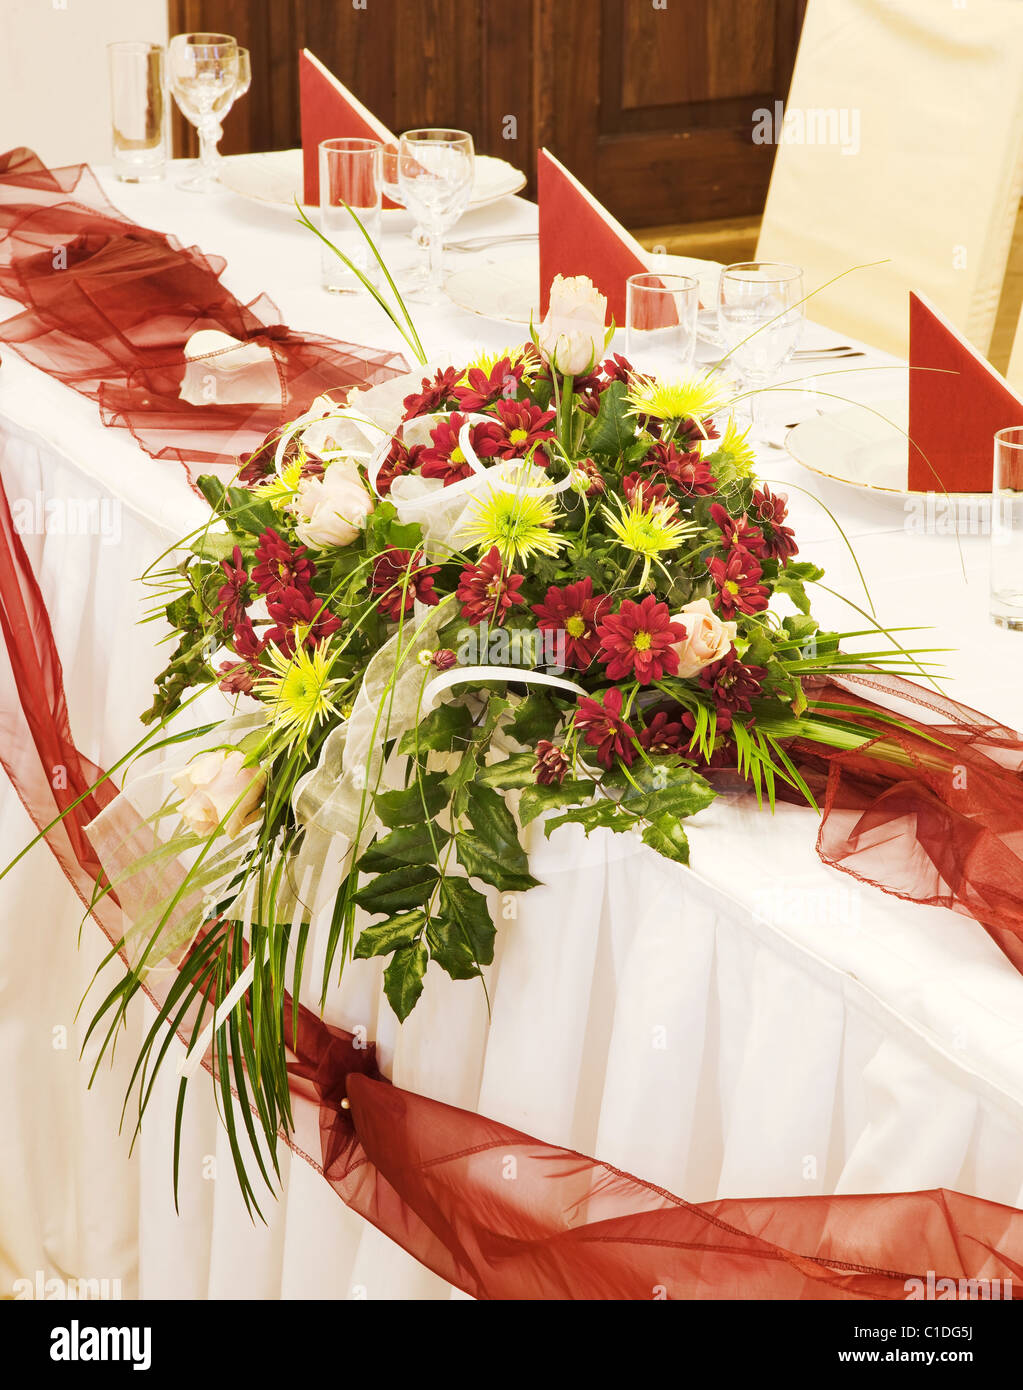 Des tables pour un dîner de fête - Décoration florale Banque D'Images